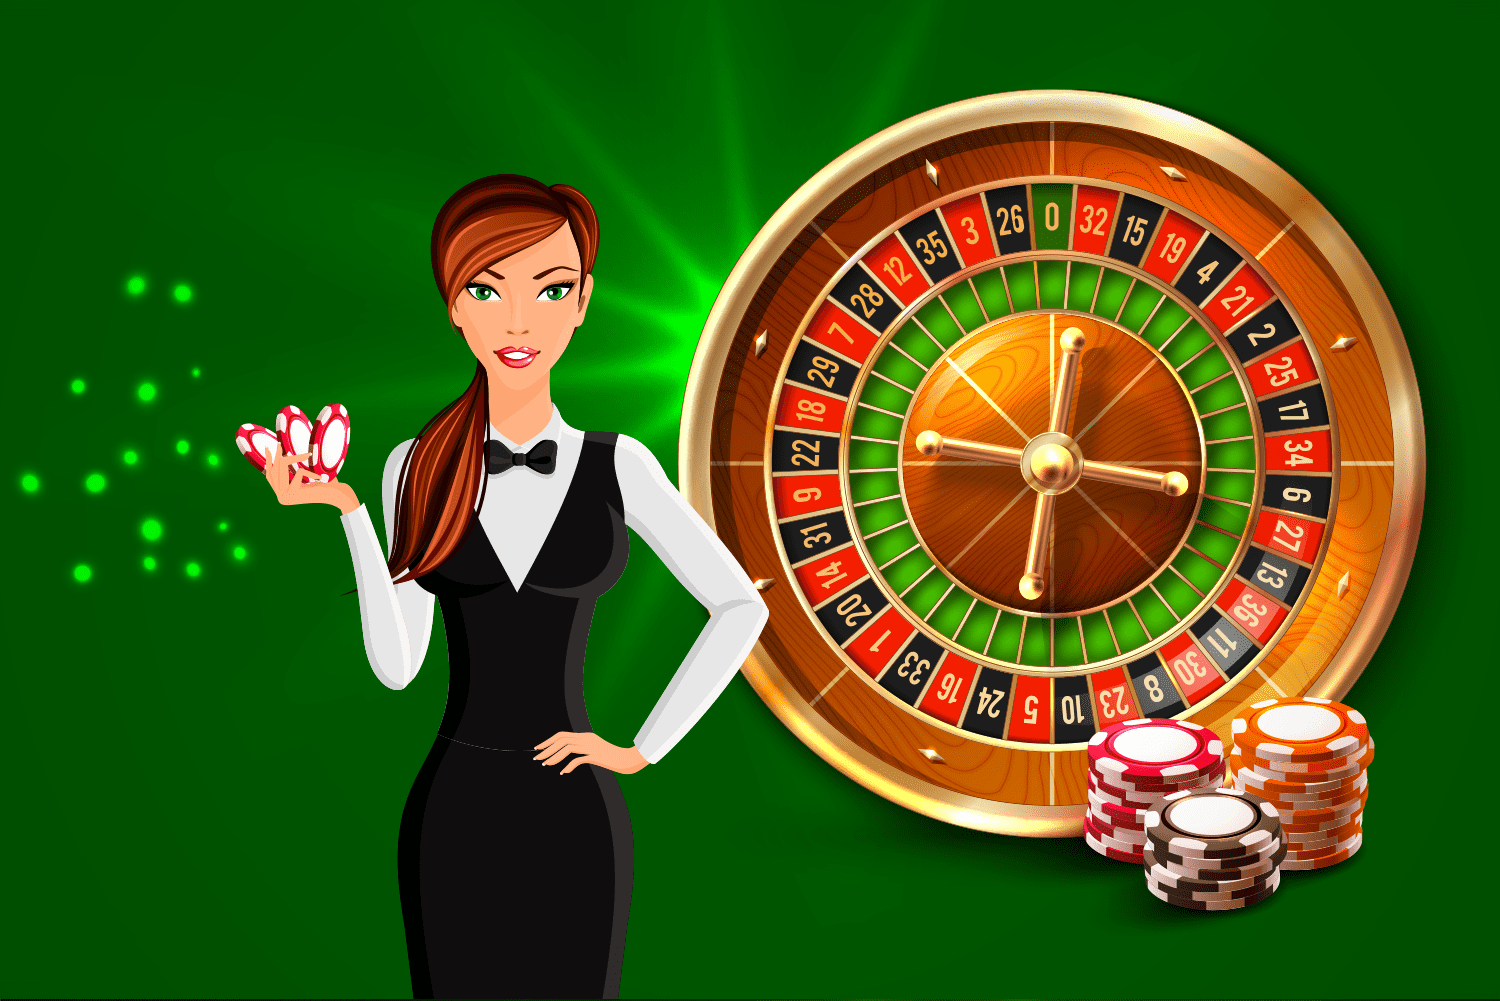 Live dealer roulette bonuses hpzwgmsymj